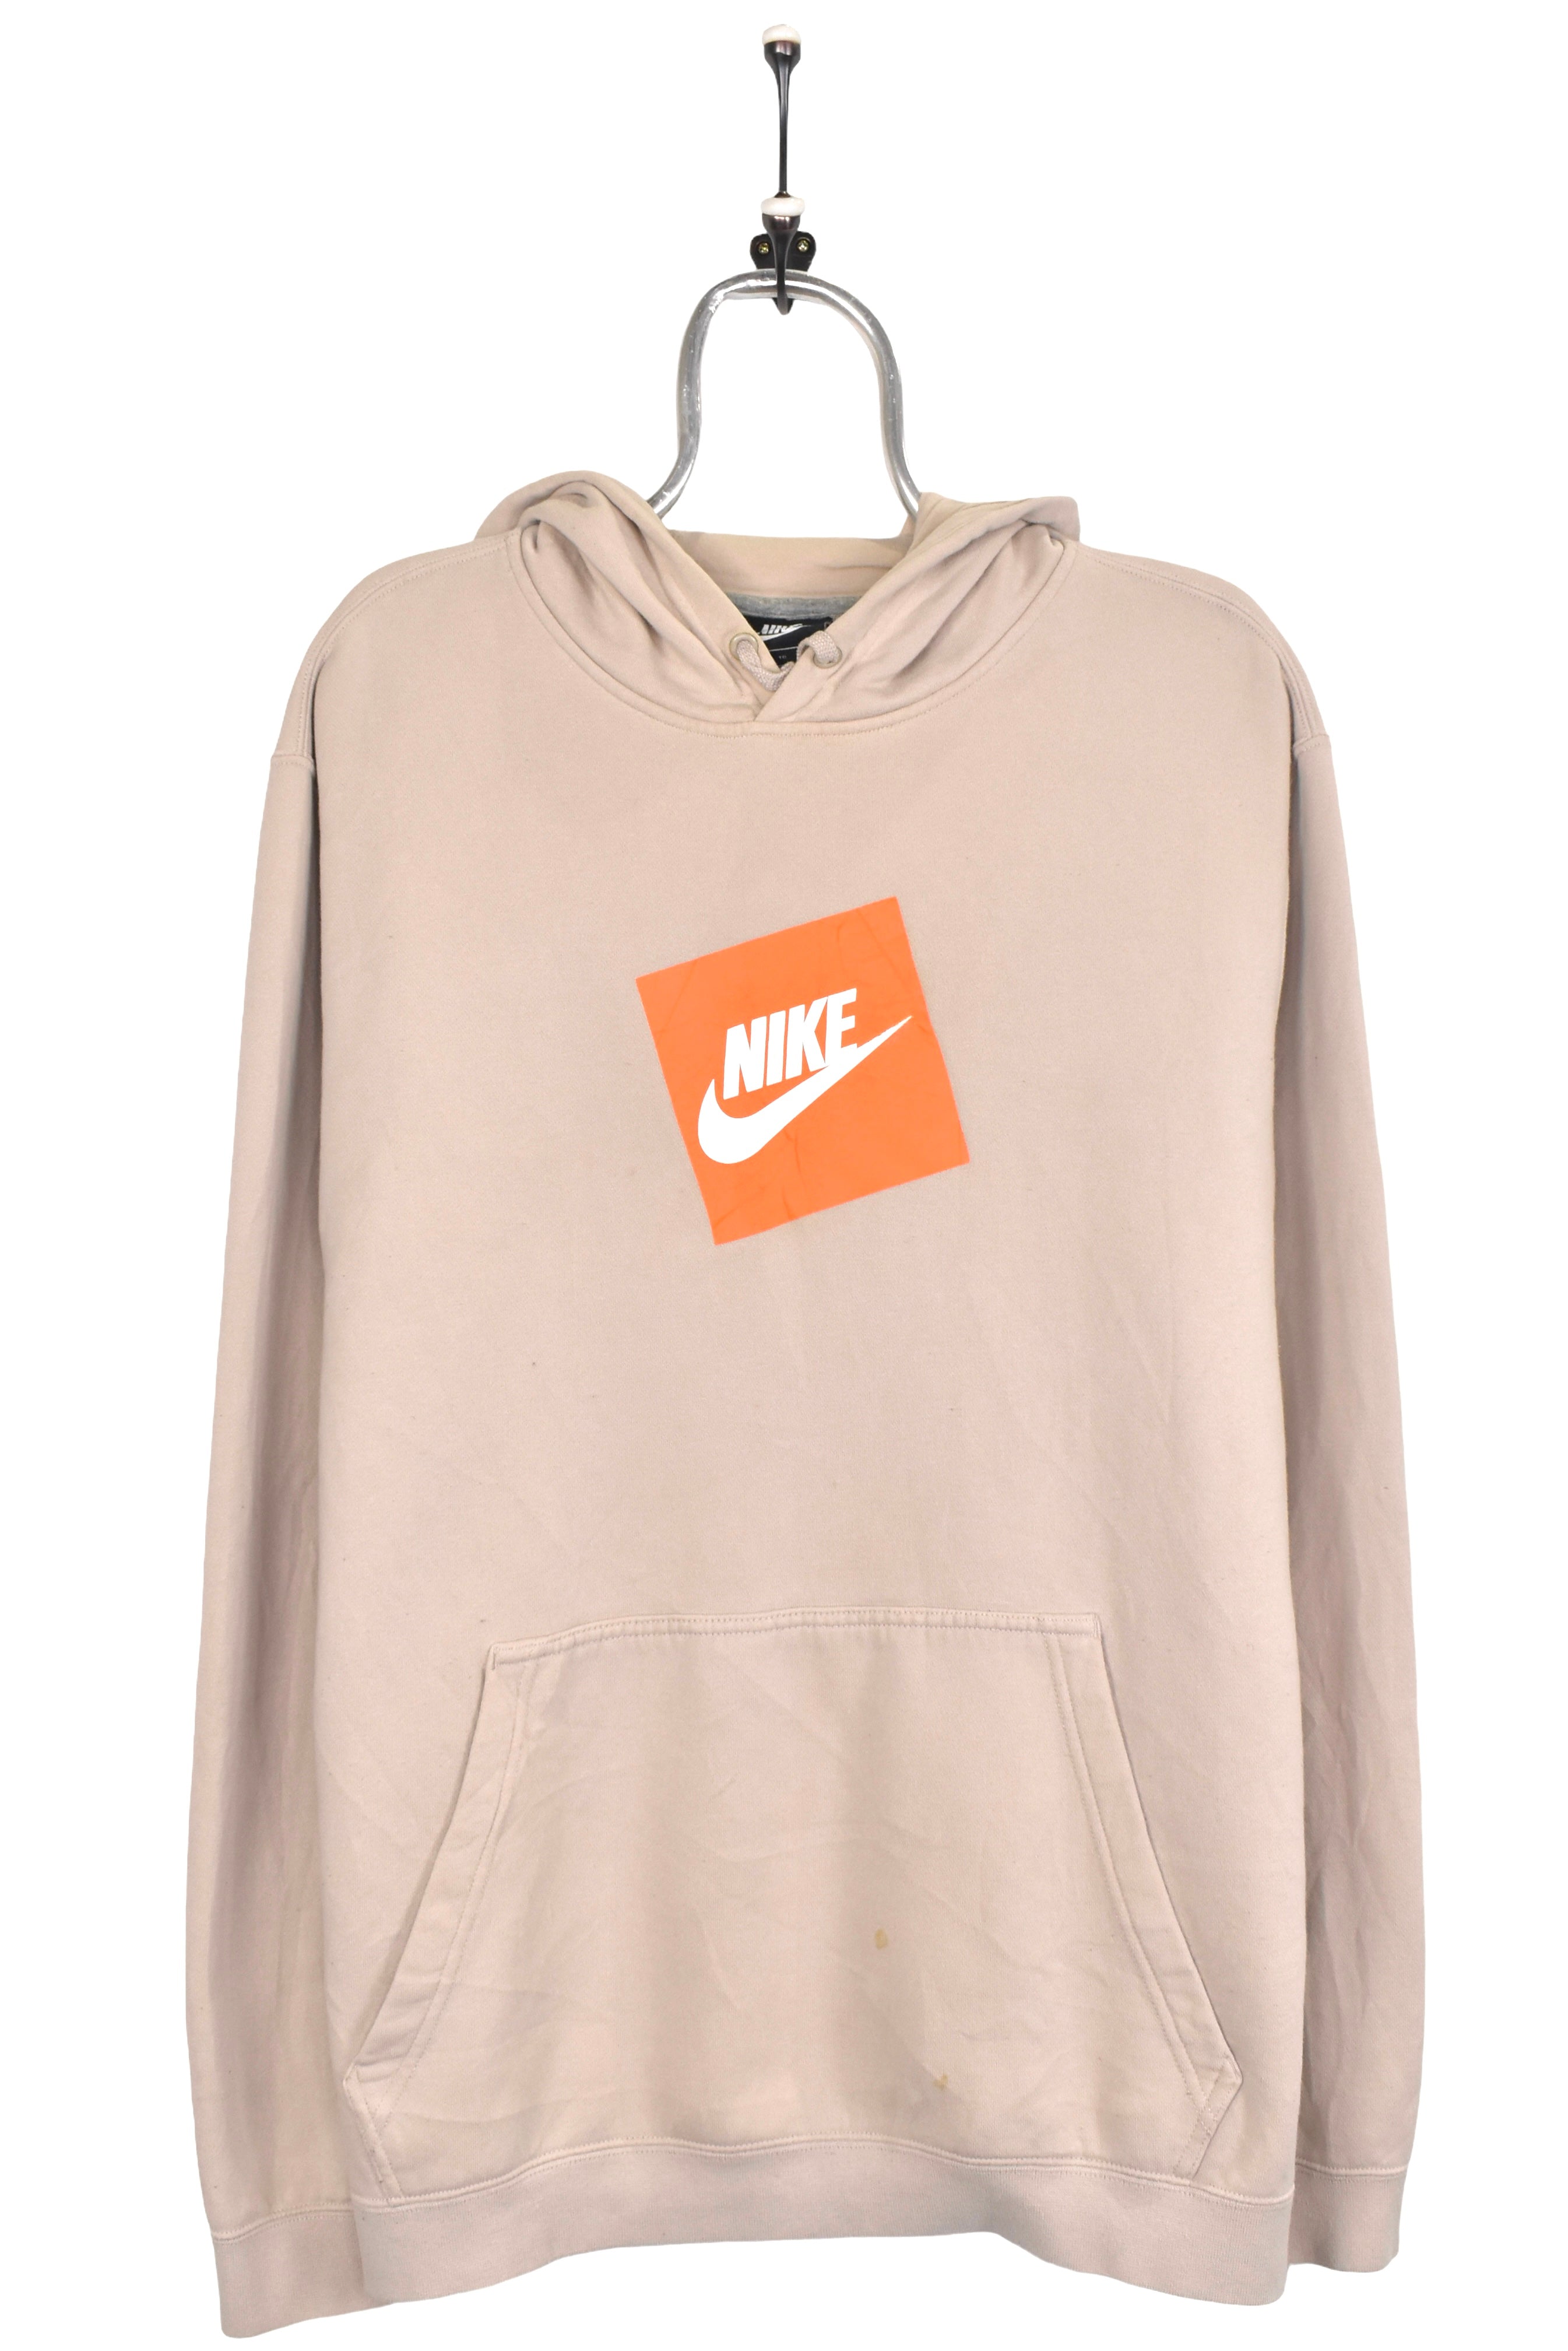 Vintage Nike hoodie, beige graphic sweatshirt - XL